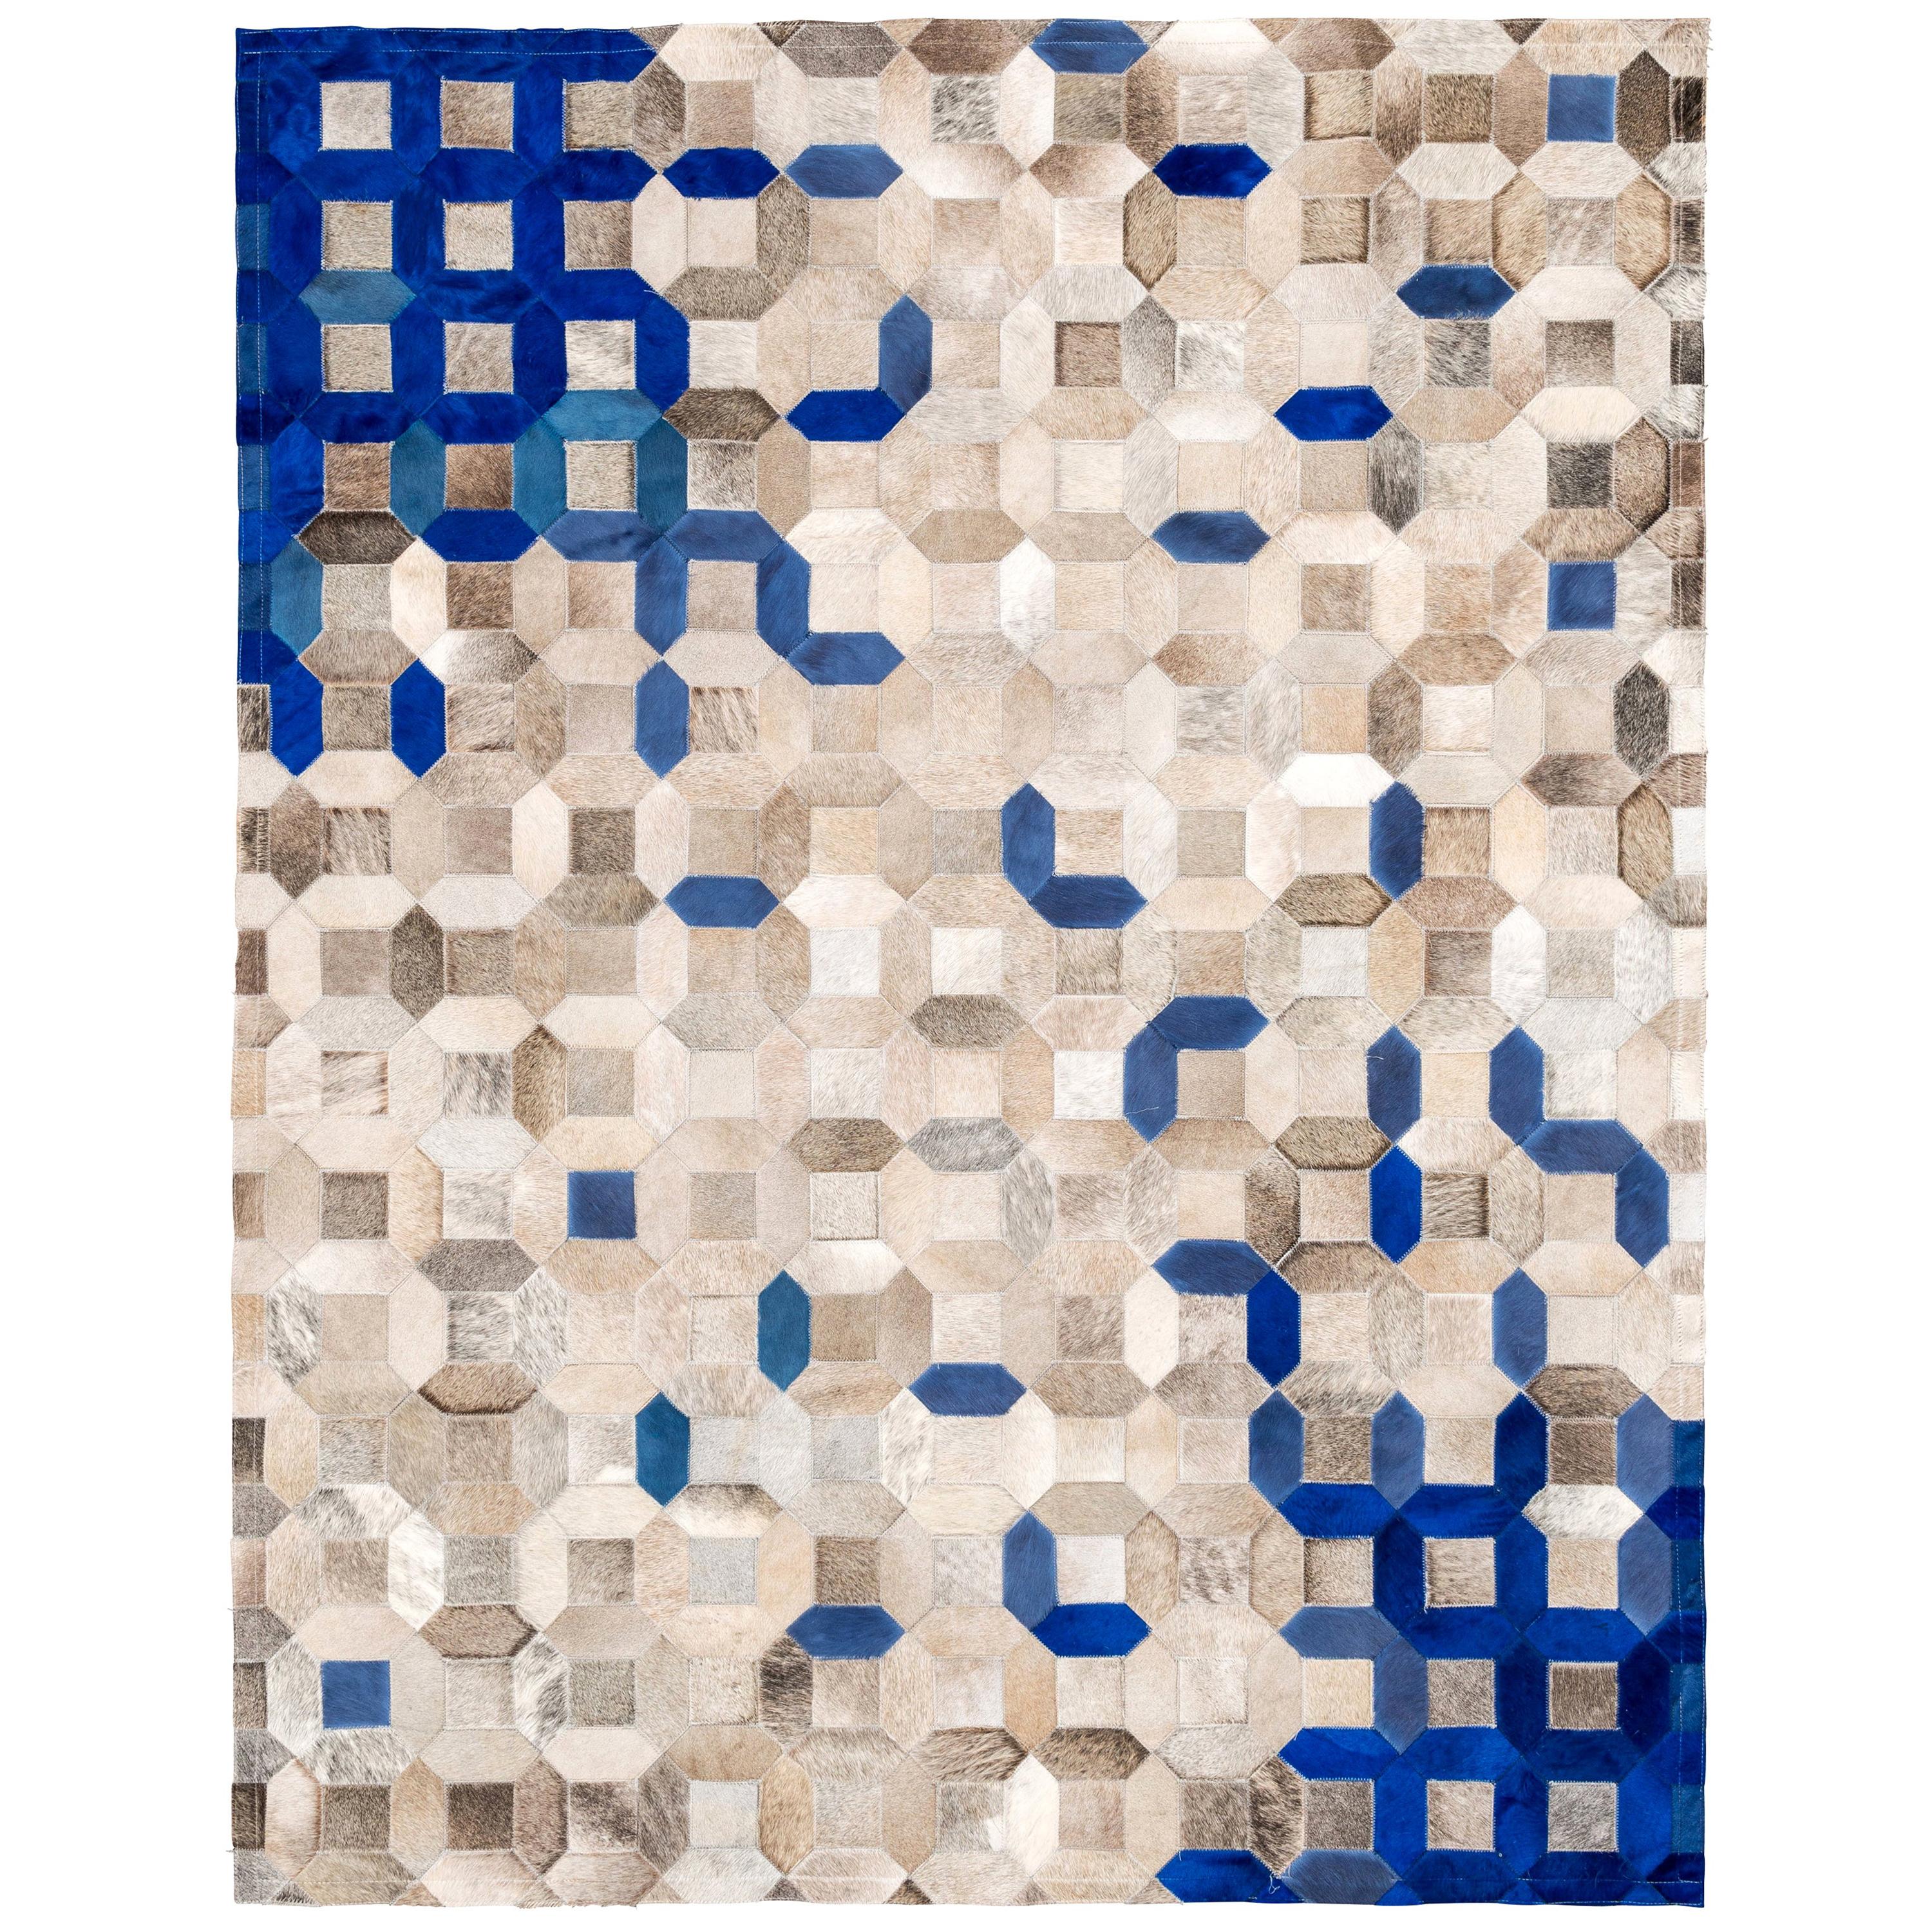 Blauer und grauer, maßgeschneiderter Teppich aus Rindsleder XXLarge mit Mosaikverzierung